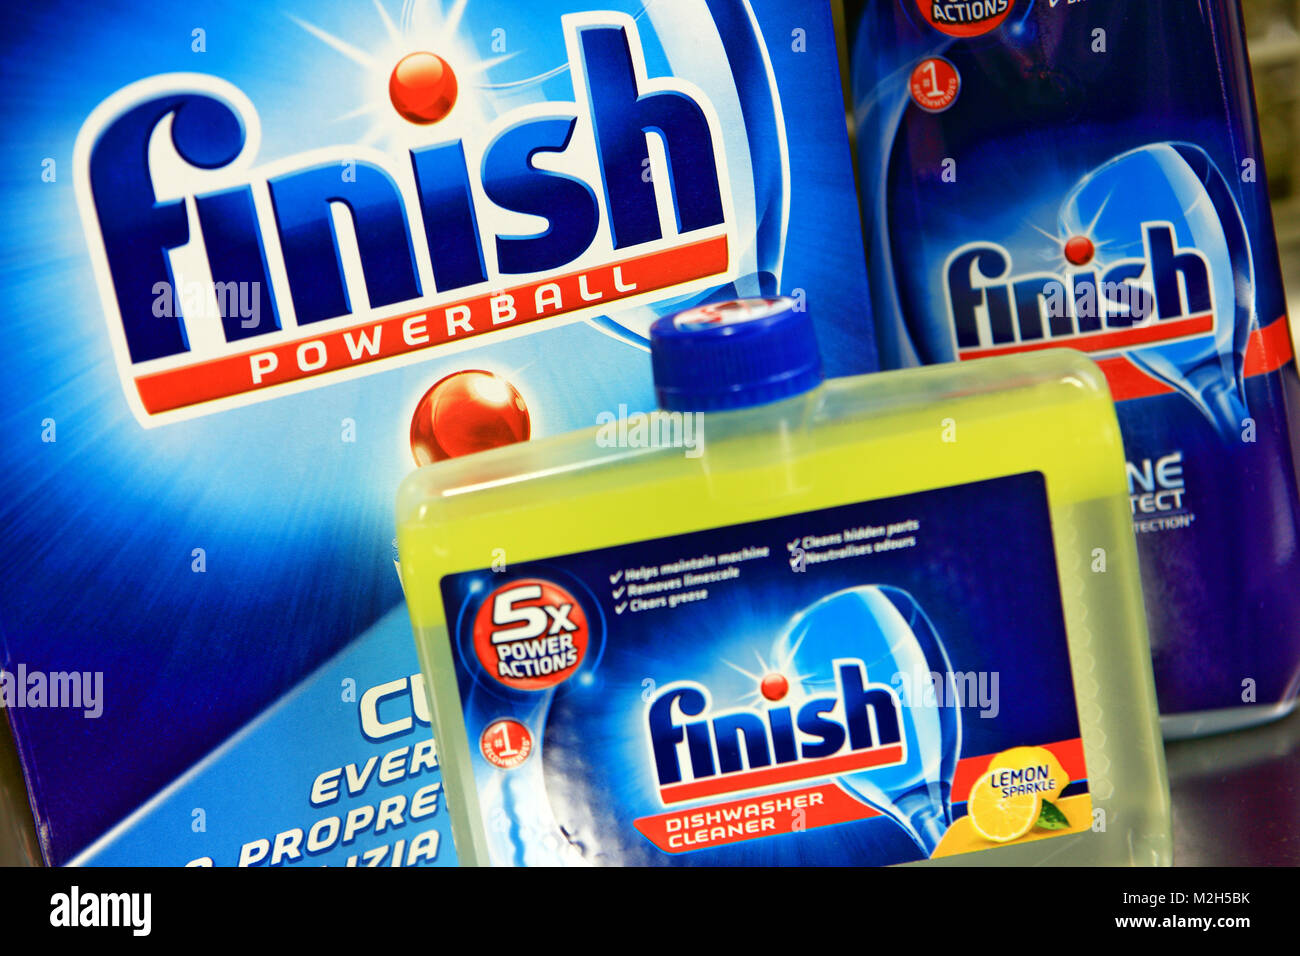 Finish dishwasher products Stock Photo - Alamy